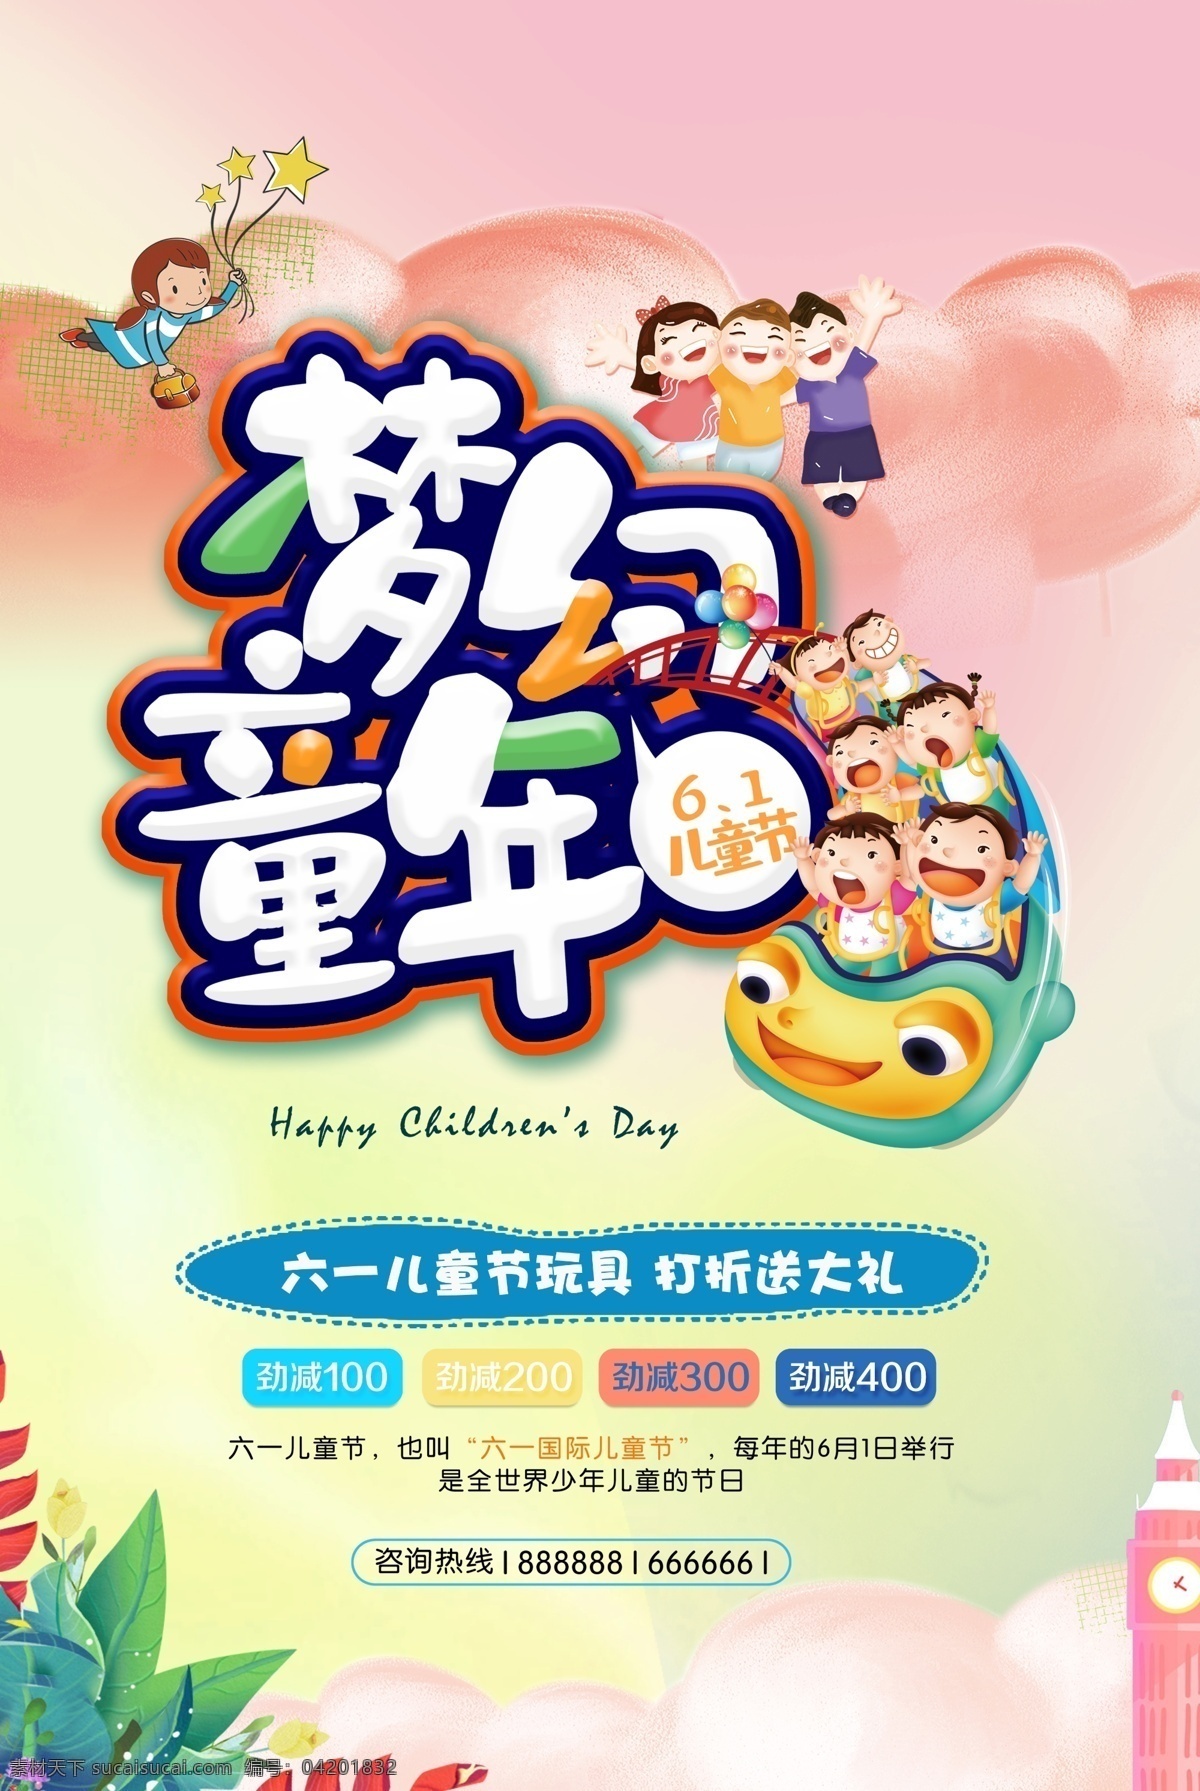 61 儿童节 玩具 促销 海报 梦幻童年 61儿童节 六一儿童节 国际儿童节 纯真年代 六一快乐 童年快乐 节日快乐